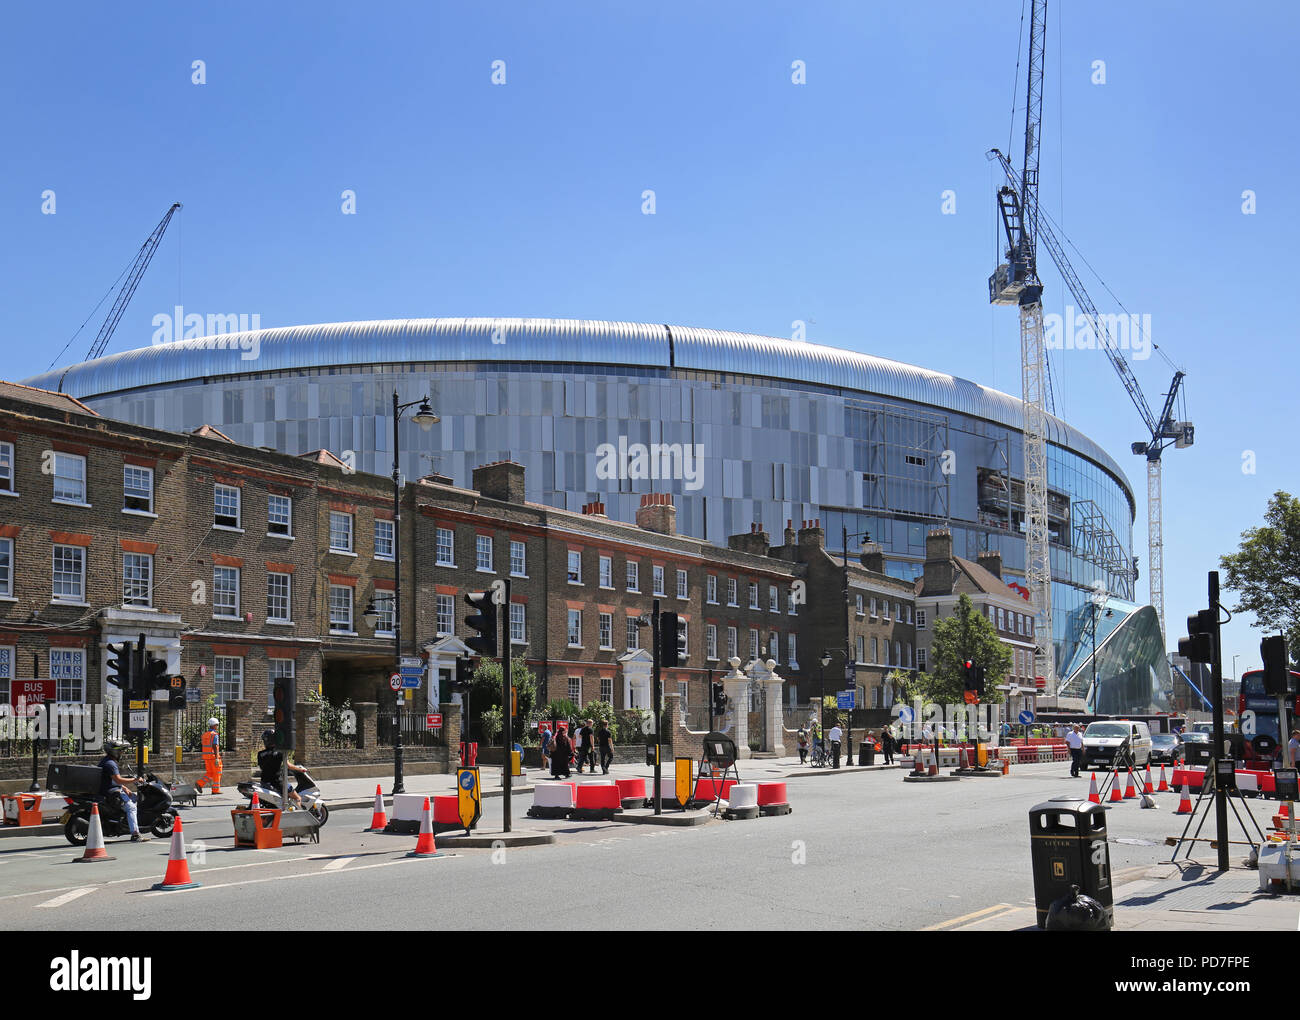 L'équipe de première division d'Angleterre, le nouveau stade de Tottenham Hotspur, éclipse les maisons locales à White Hart Lane, Londres. Achèvement en cours (août 2018). Banque D'Images